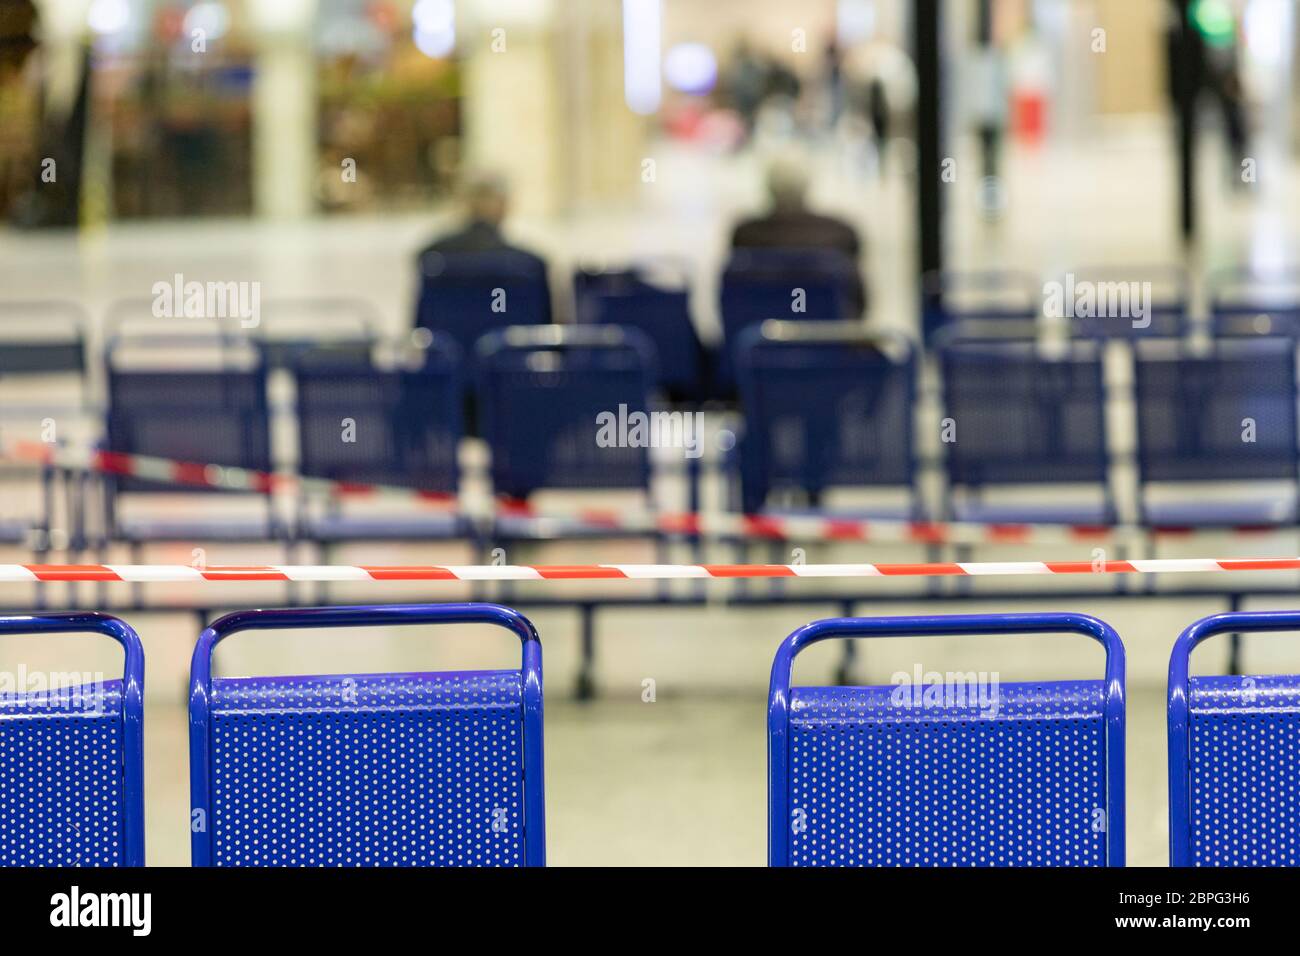 Dehntes Schutzband auf den Stühlen. Es ist verboten, während der Coronavirus-Pandemie auf öffentlichen Plätzen zu sitzen, um die Menschen vor Infektionen zu schützen Stockfoto